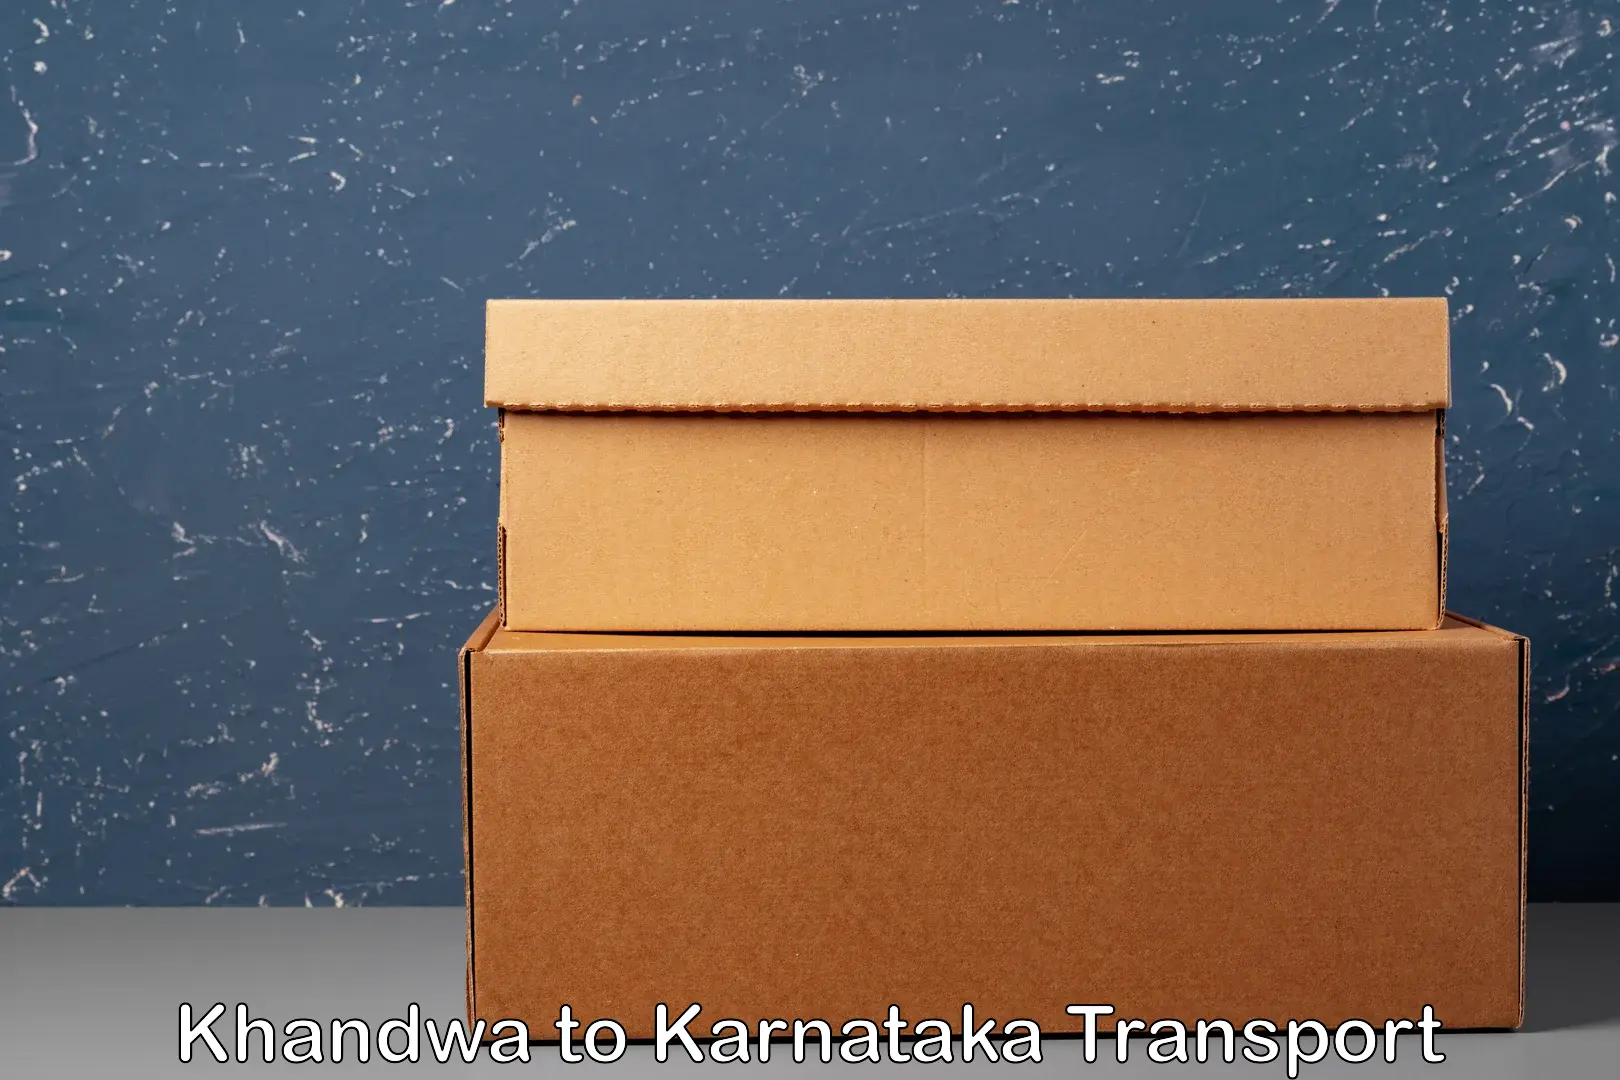 Two wheeler parcel service Khandwa to Saundatti Yallamma